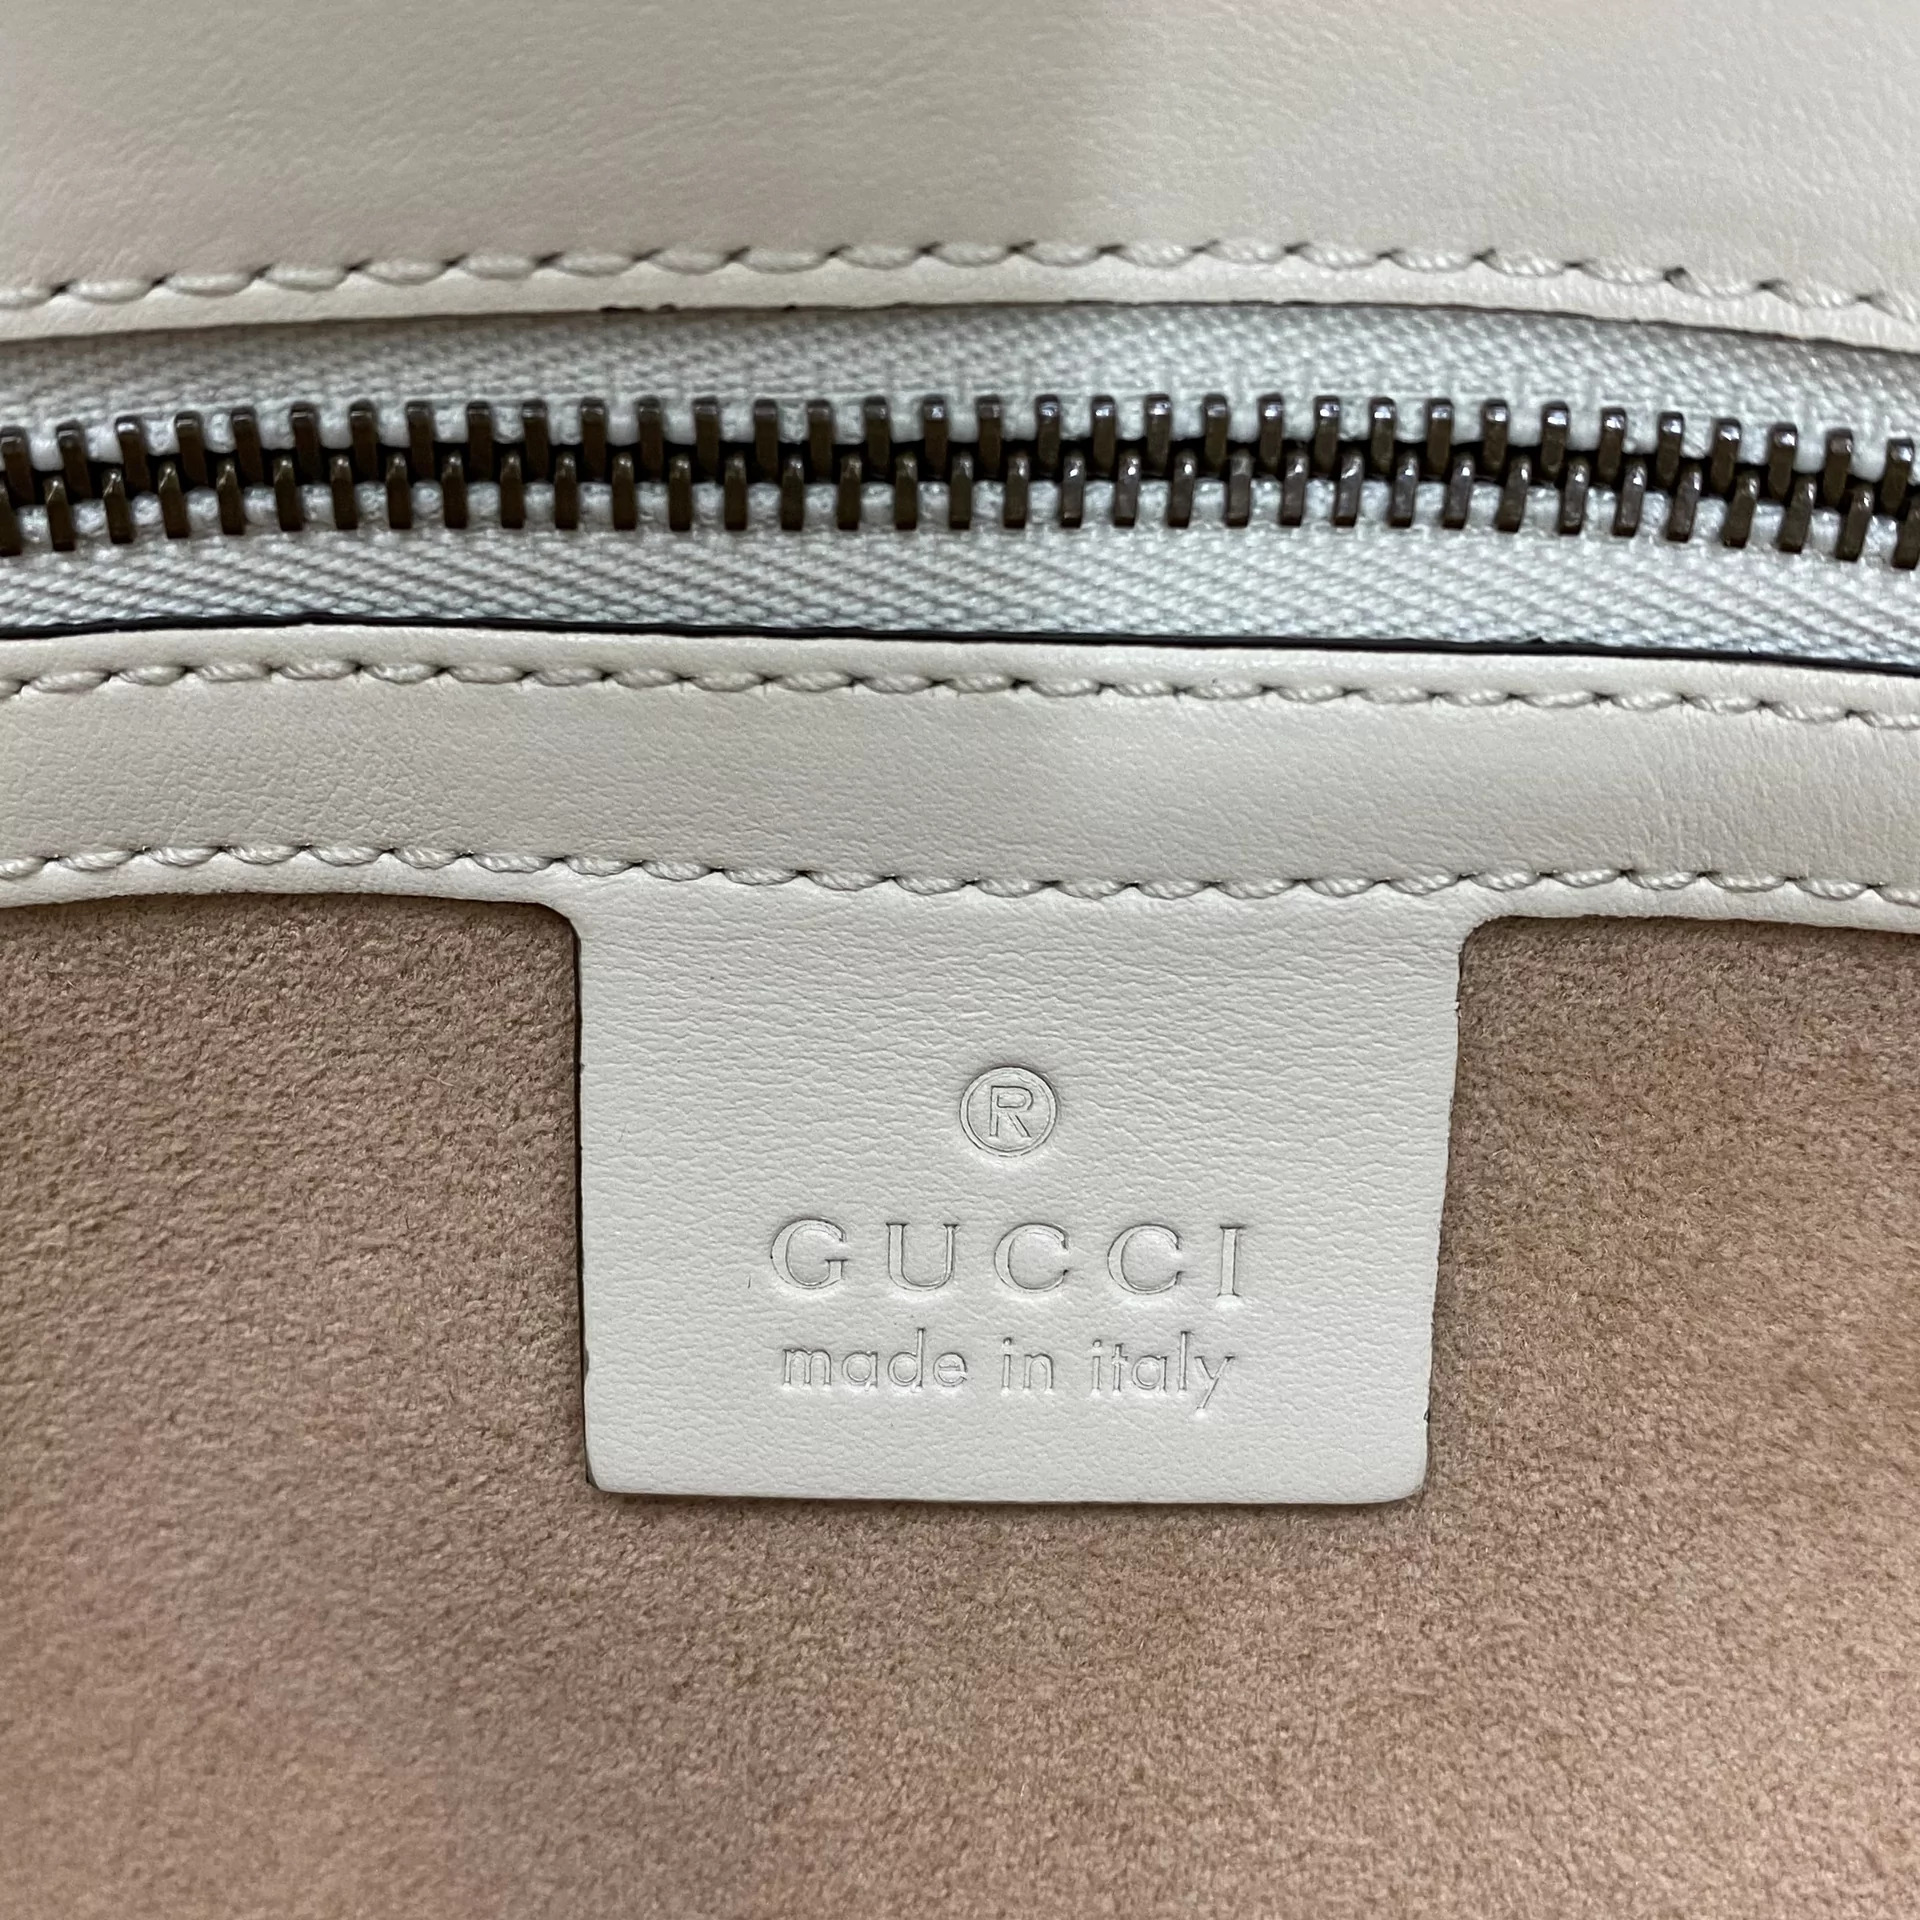 Bolsa Gucci GG Marmont Off White